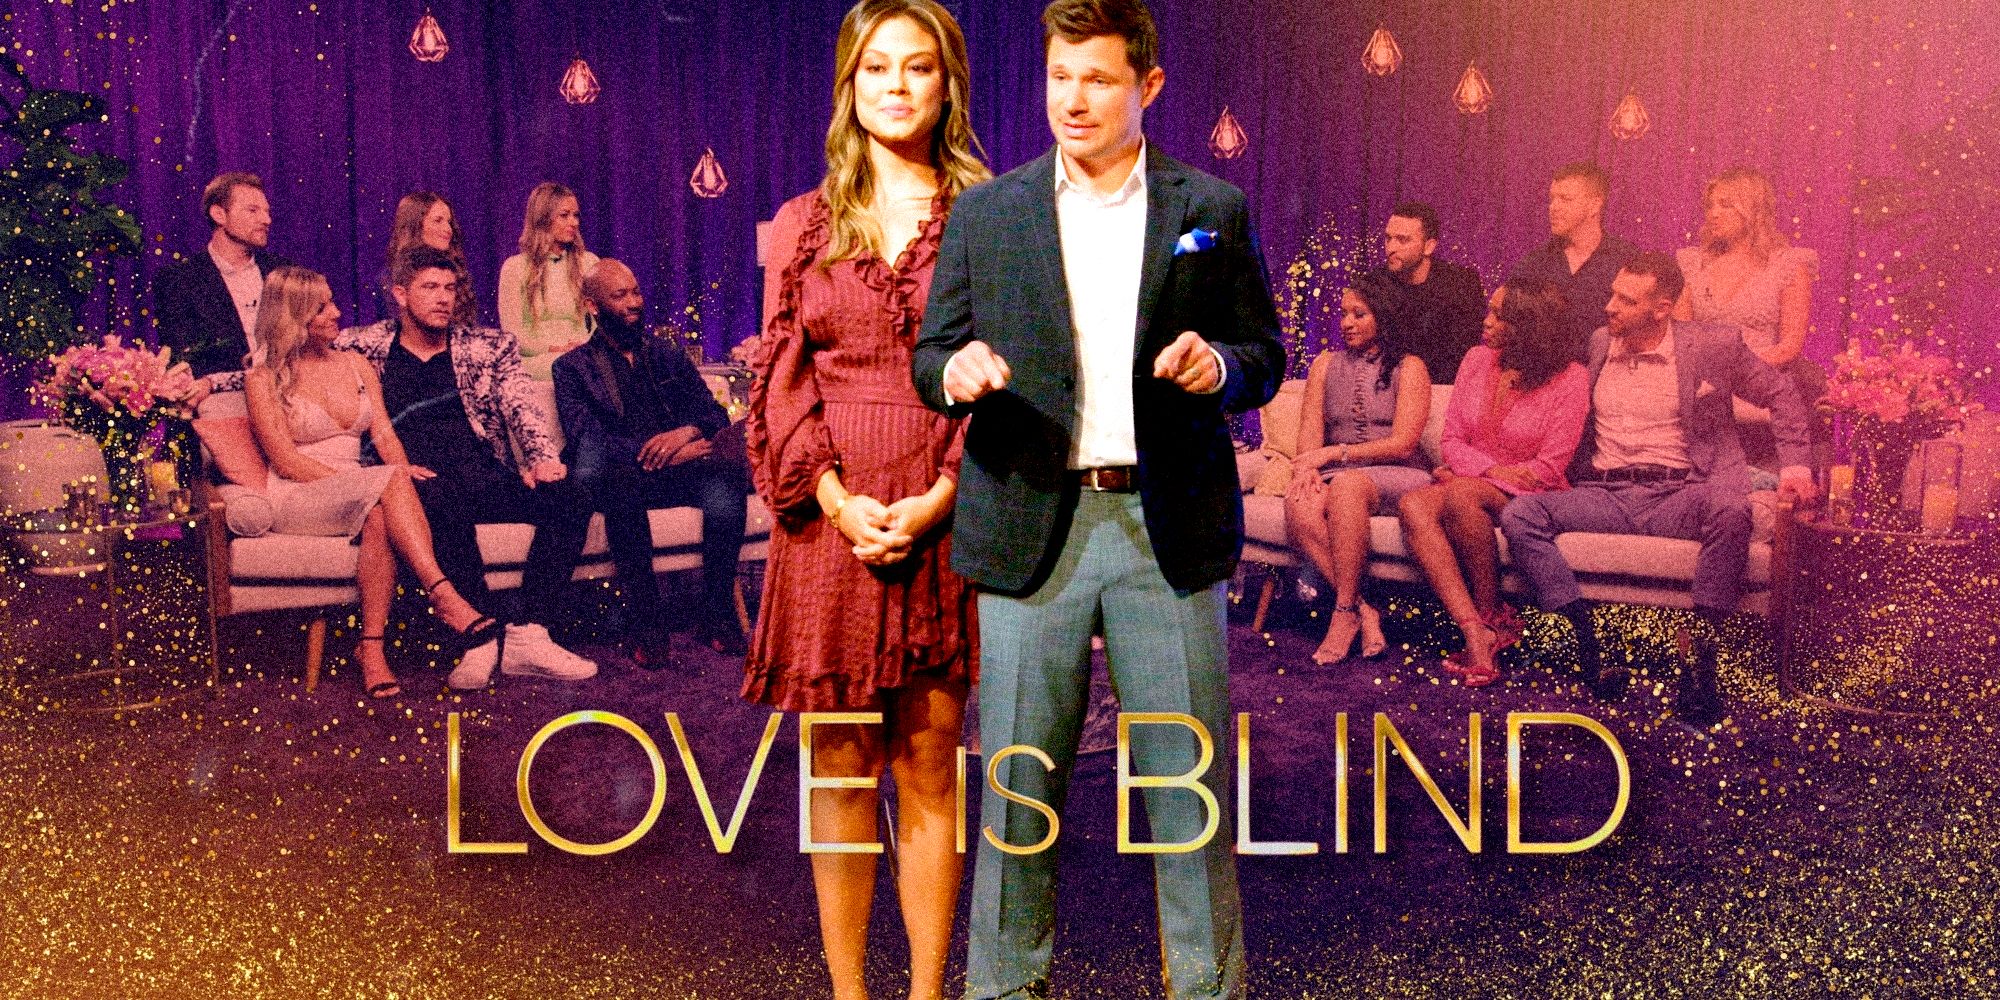 El tráiler de la temporada 6 de Love Is Blind muestra triángulos amorosos y una experiencia de cápsula "peligrosa"